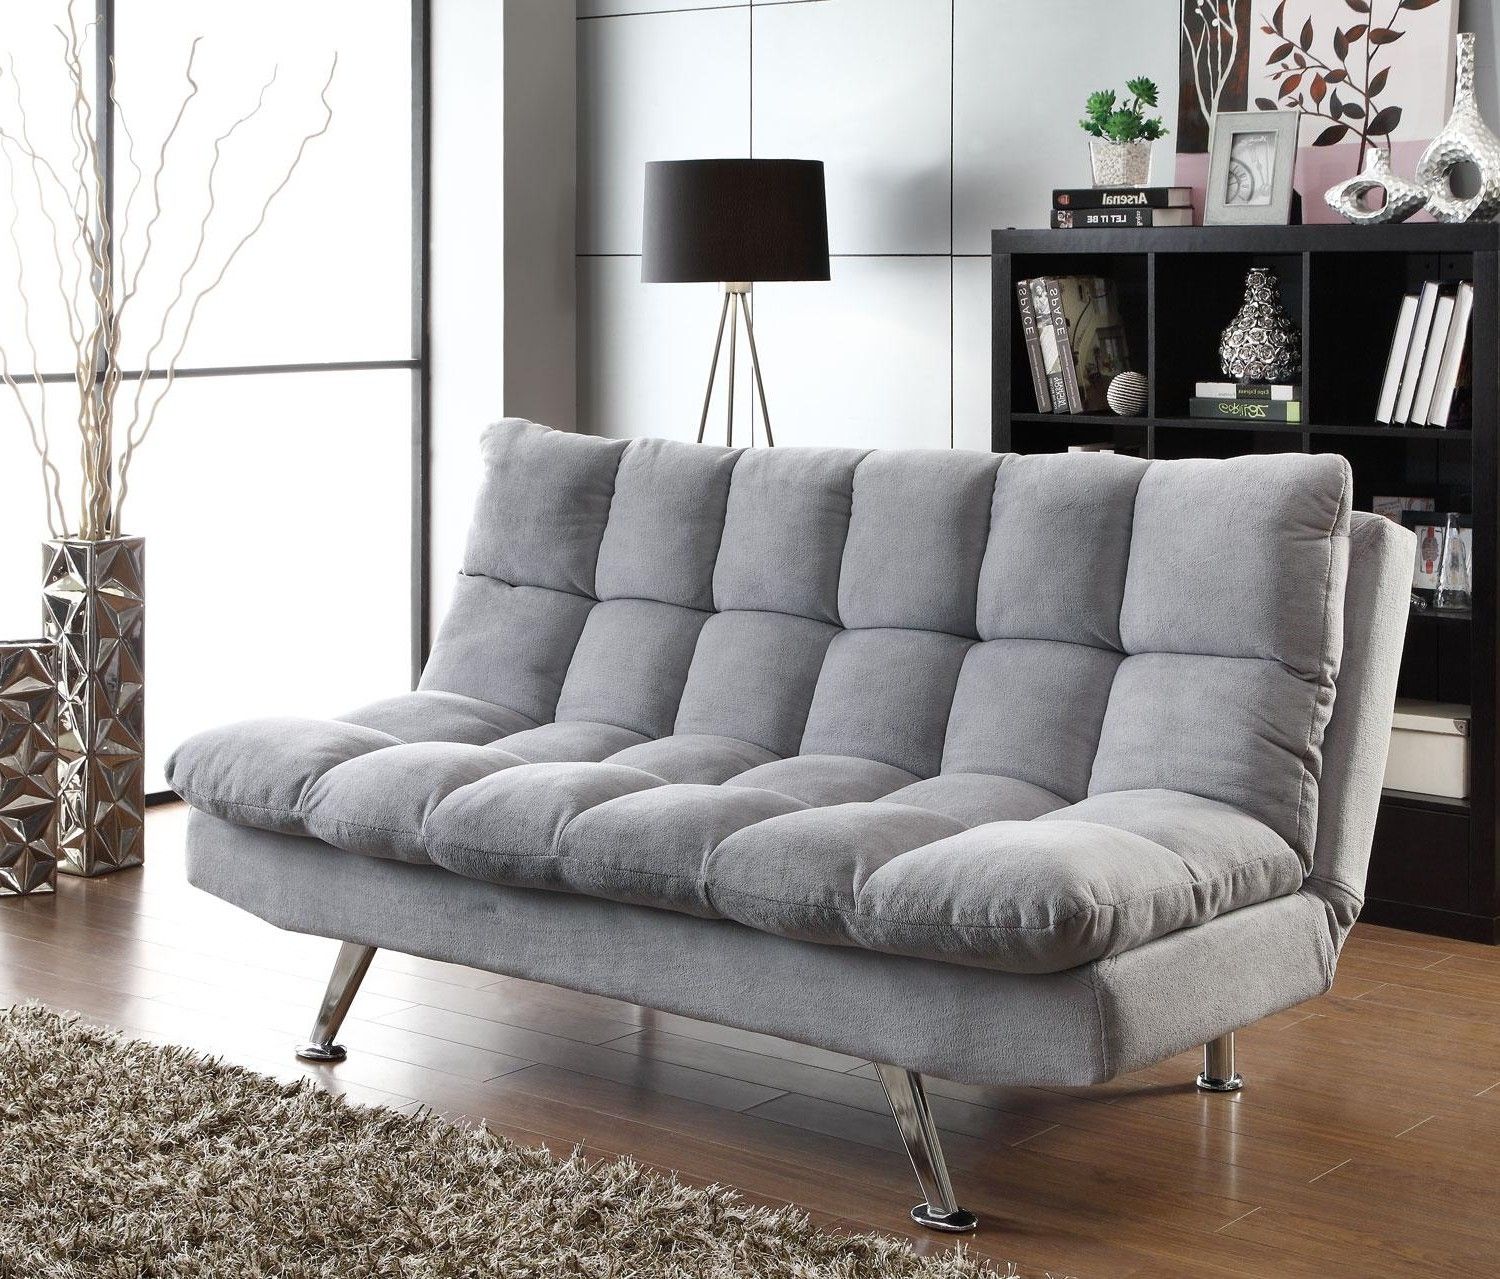 15 Collection of Big Lots Sofa Sleeper | Sofa Ideas